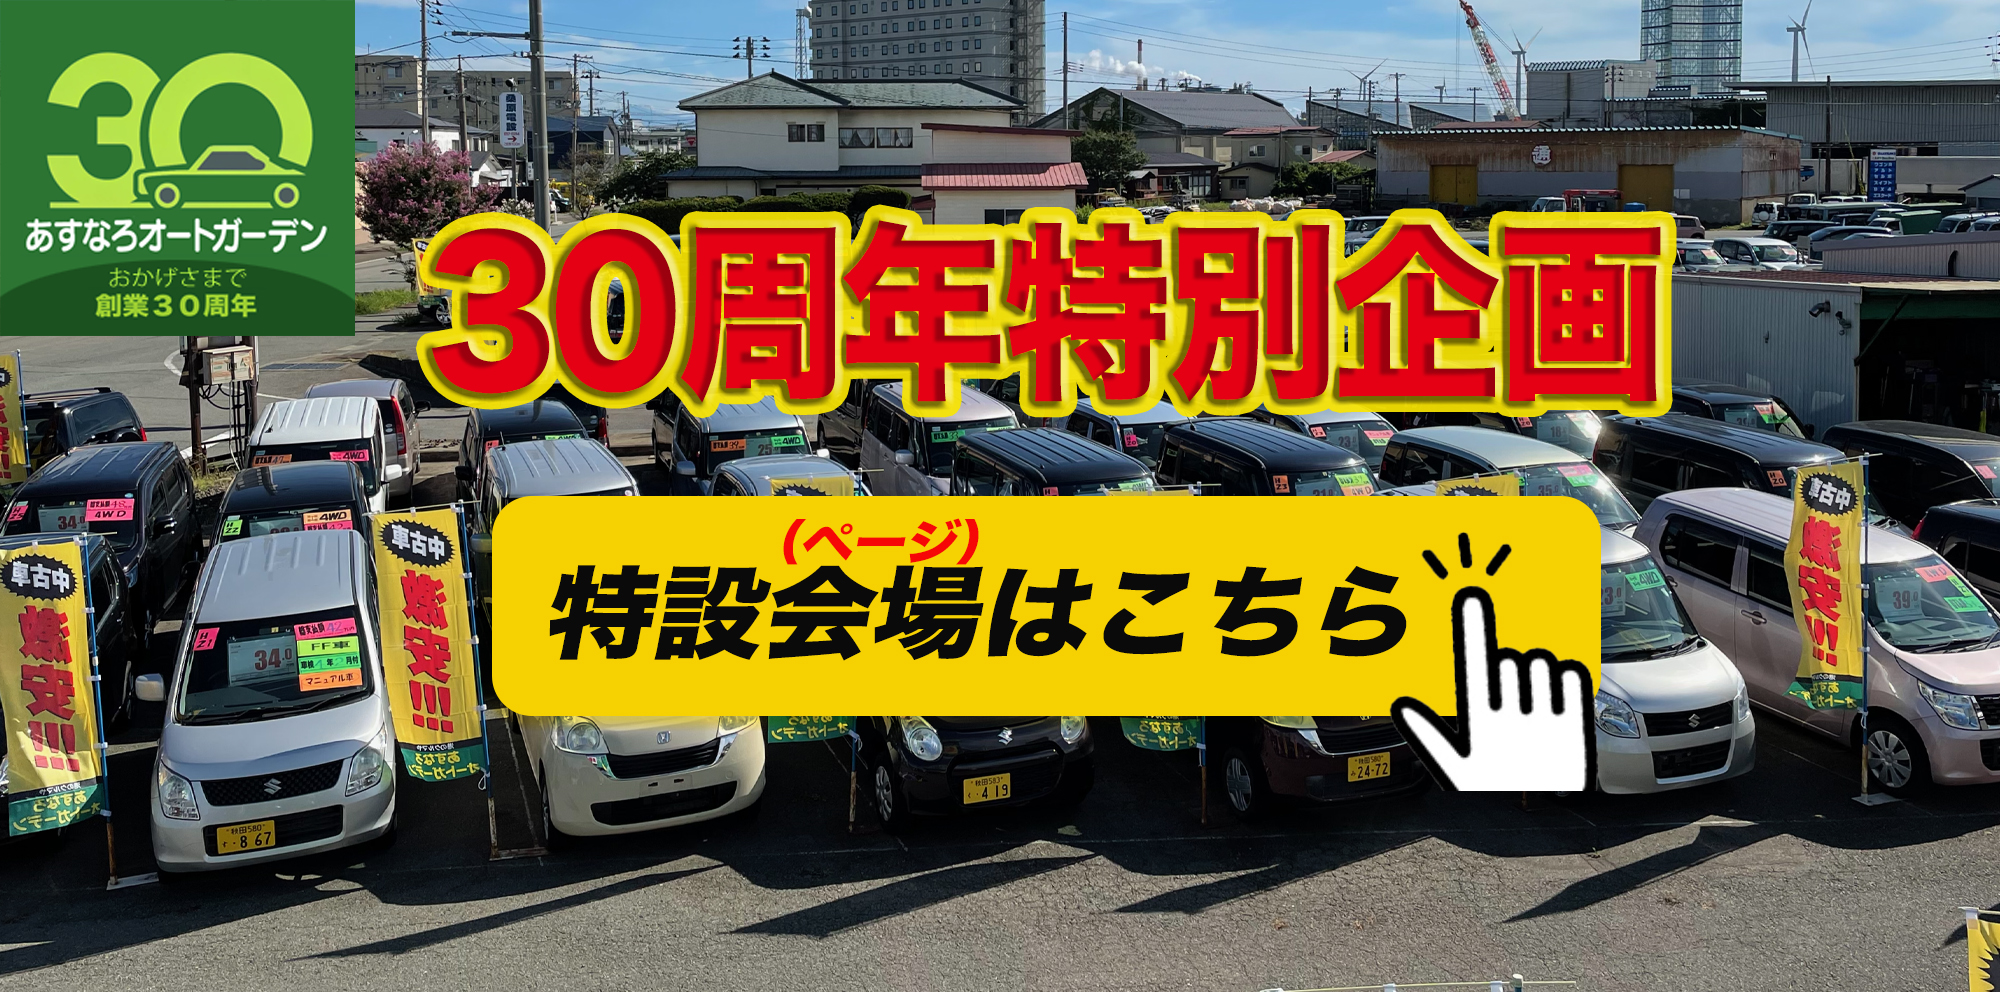 軽自動車など中古車をお探しなら秋田市のあすなろオートガーデン